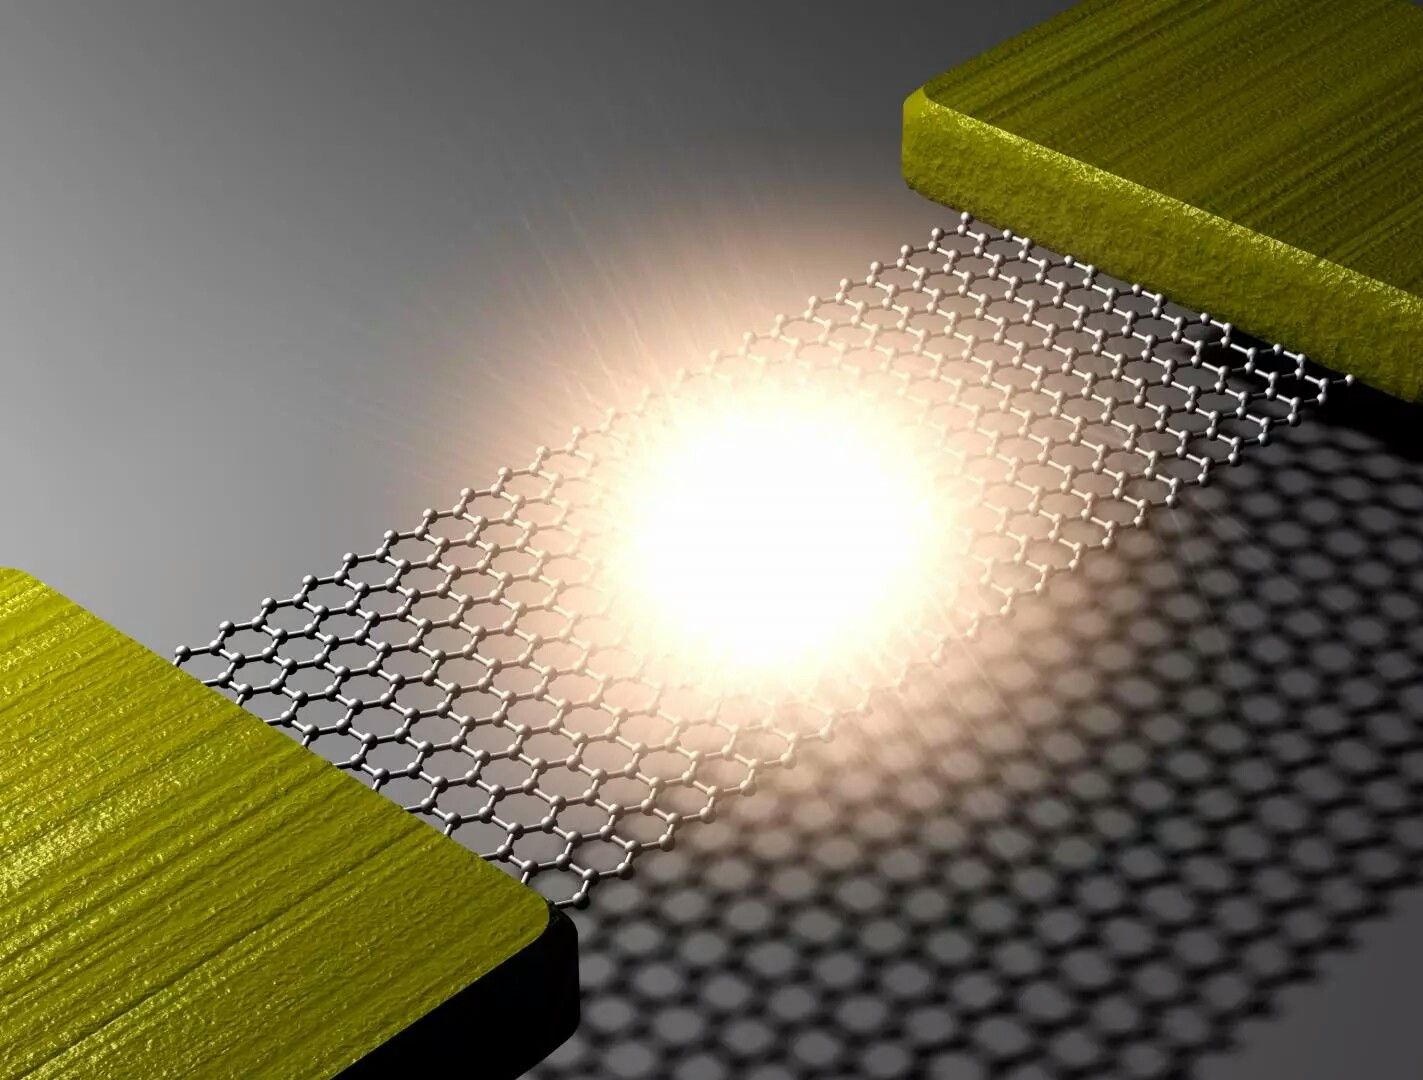 Ученые создали графеновую лампочку с нитью накаливания толщиной в атом